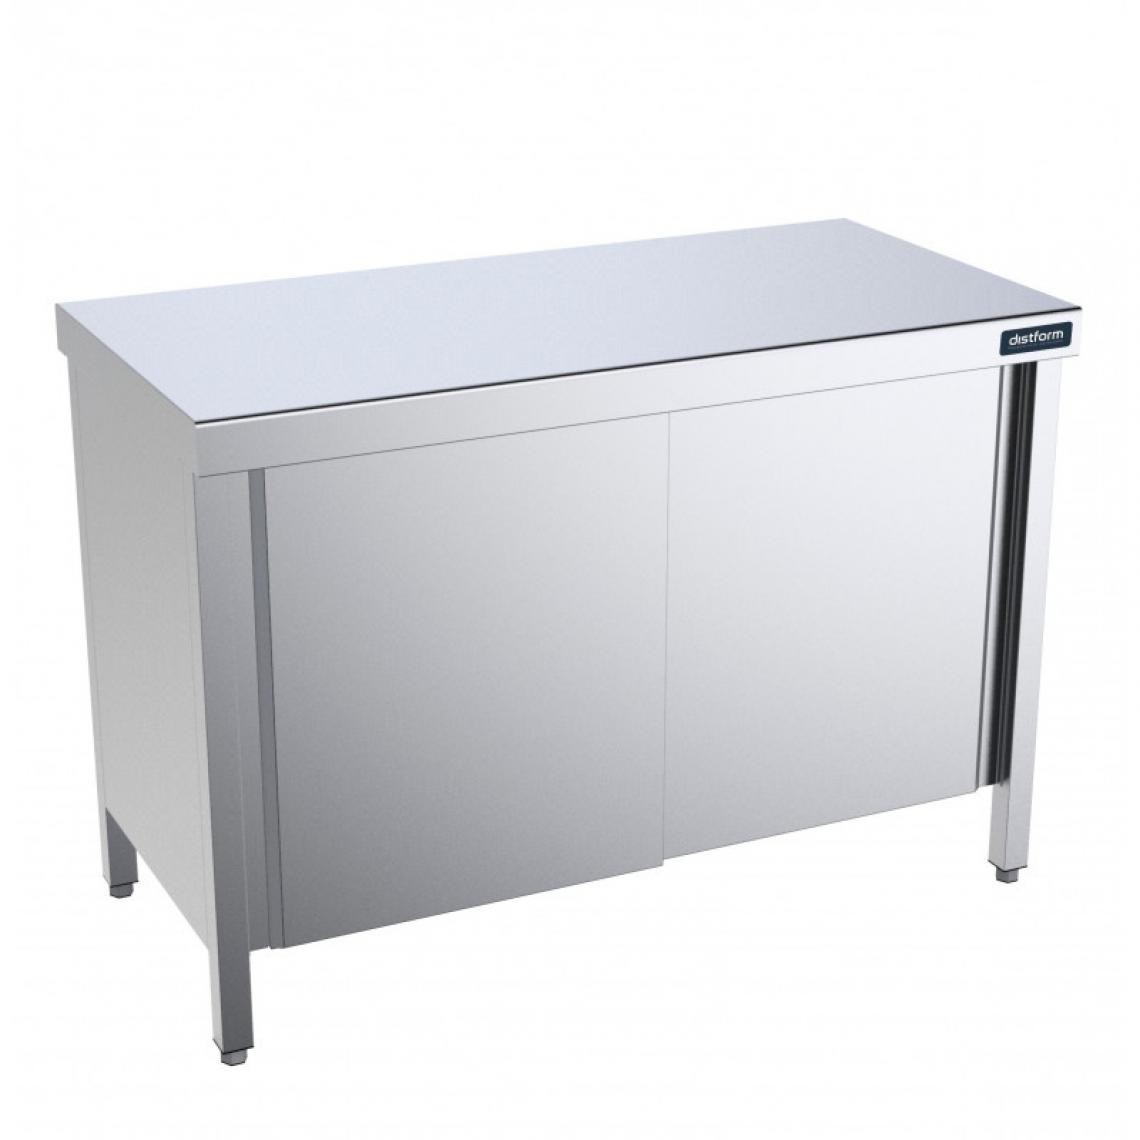 DISTFORM - Table Centrale avec Portes Battantes Profondeur 600mm - Distform - Acier inoxydable1800x600 - Tables à manger